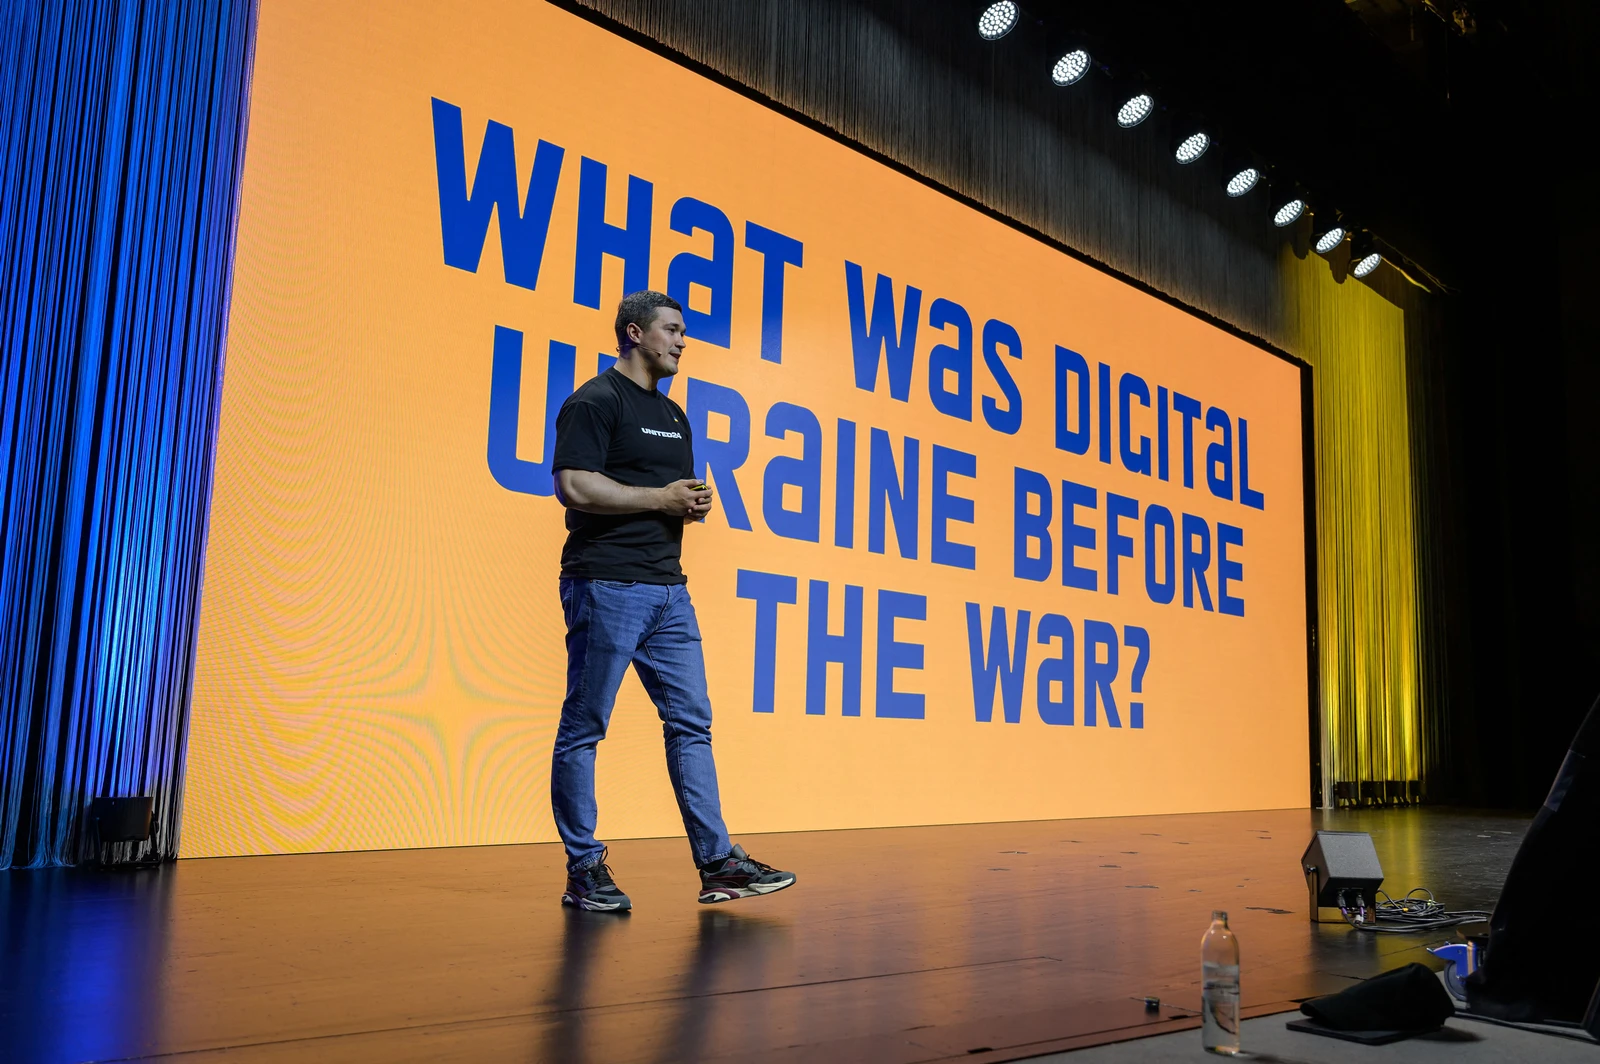 El ministro ucraniano de transformación digital, Mykhailo Fedorov, hablando en una conferencia internacional. (imagen: fabrice coffrini/afp vía getty images)